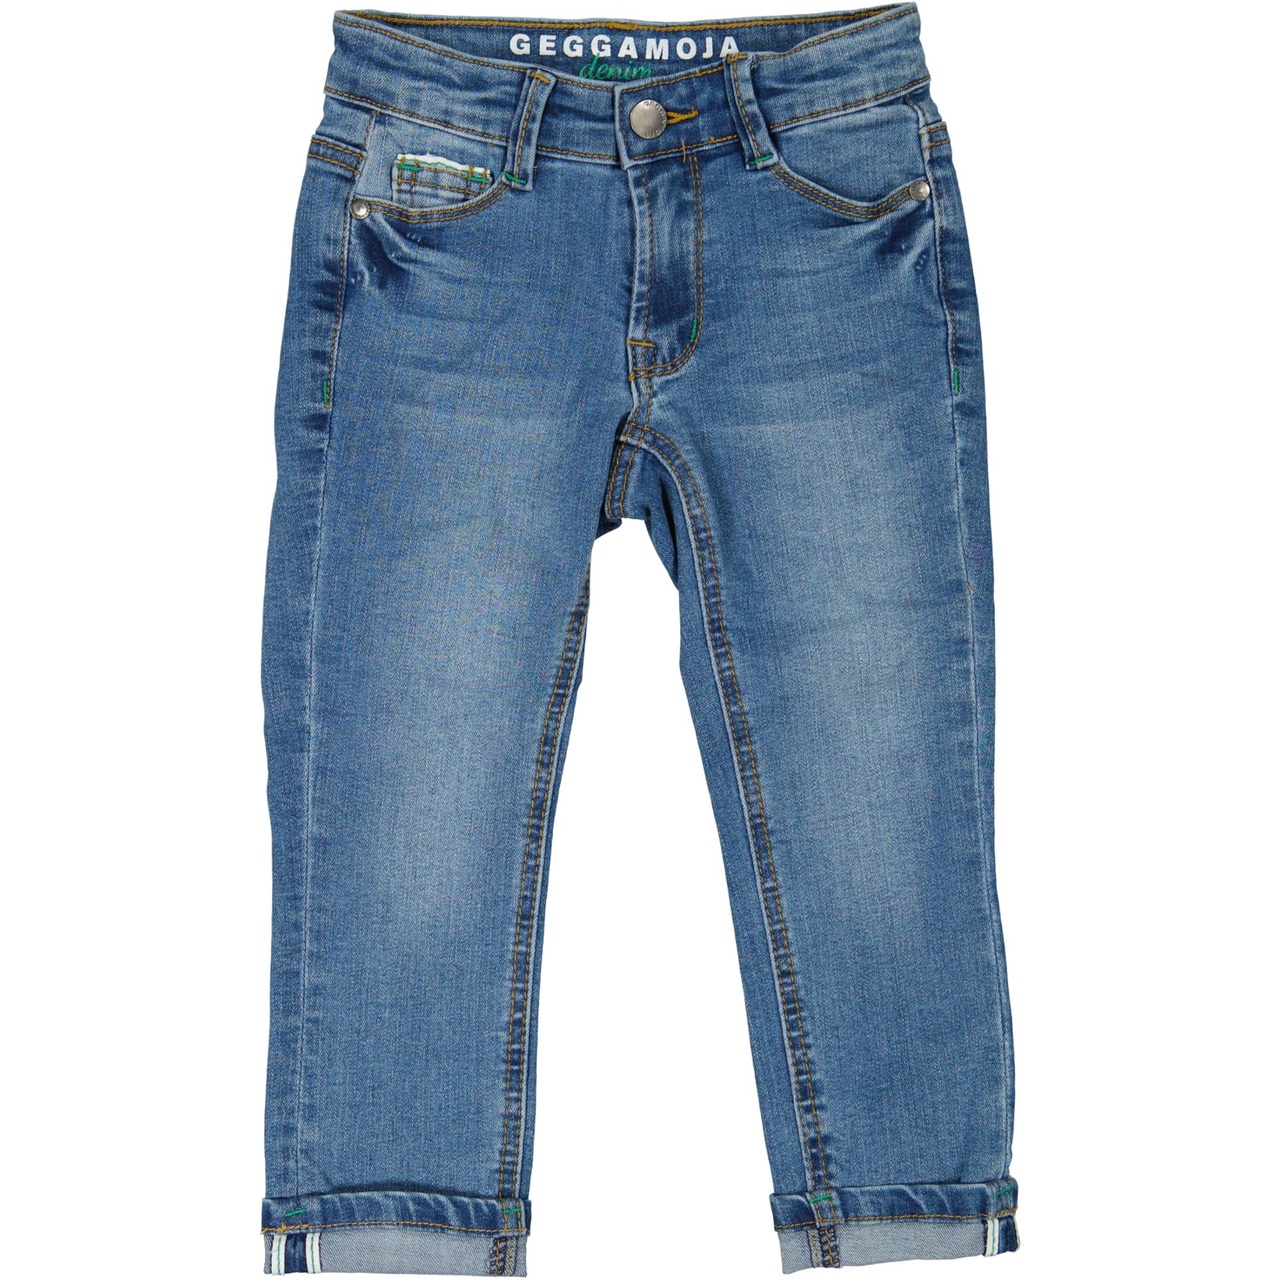 Unisex 5-pocket jeans Denim blue wash 86/92